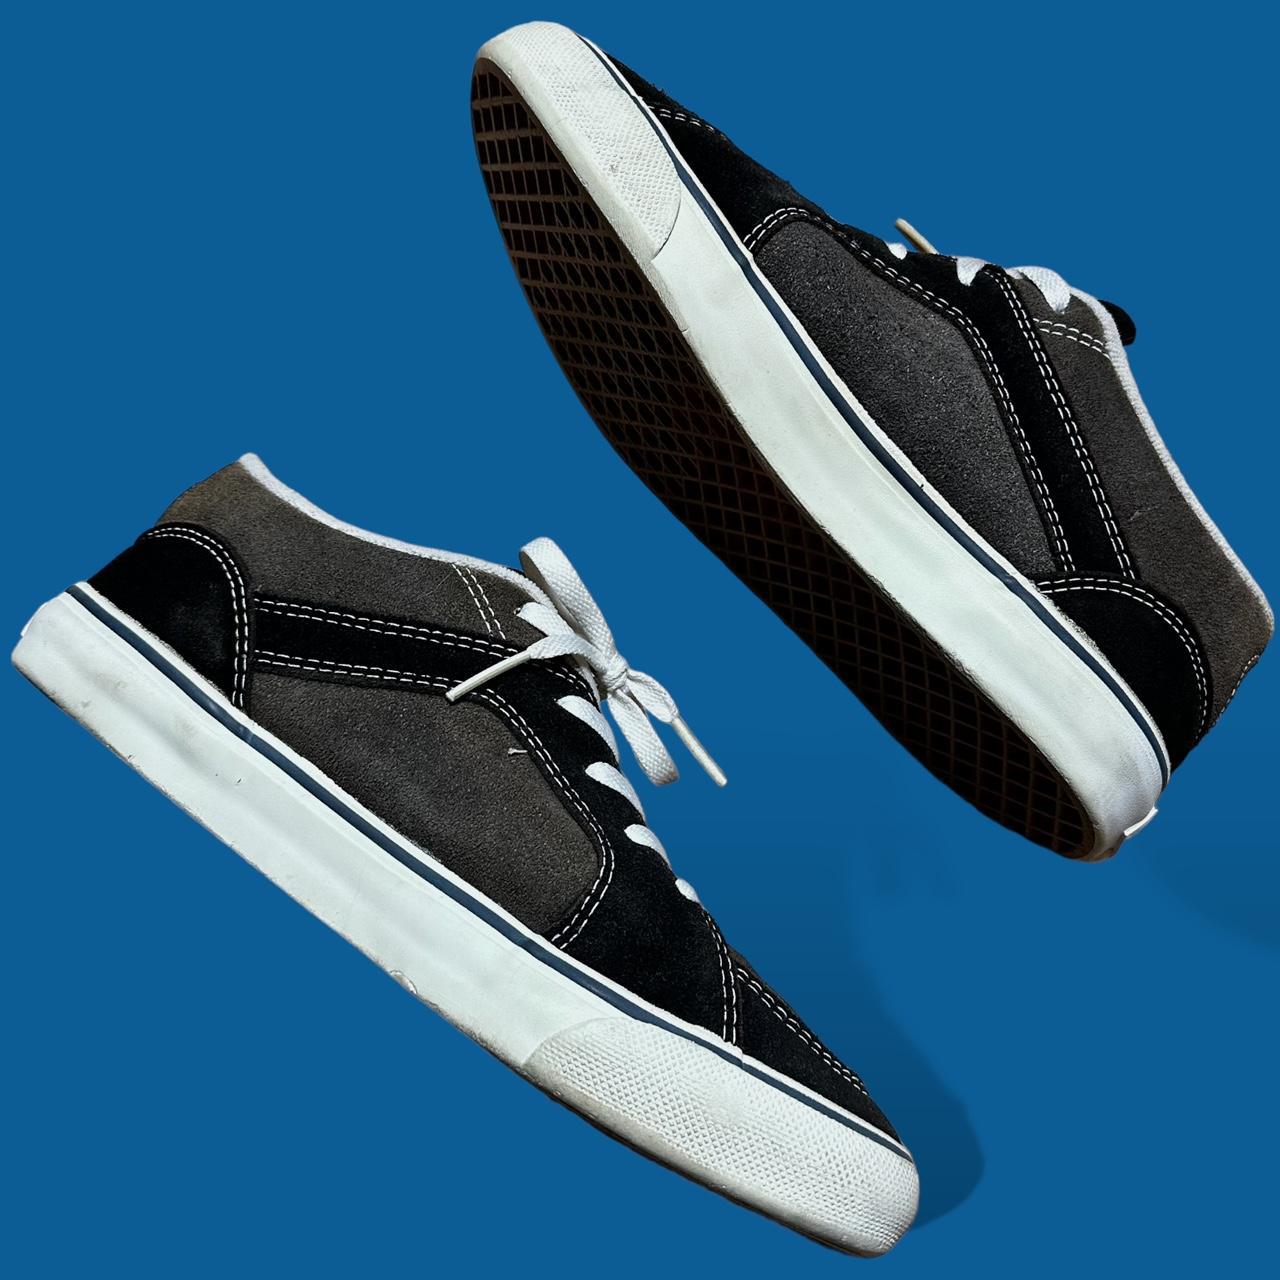 Supreme Vans Black Halfcab pro skate shoes size - Depop